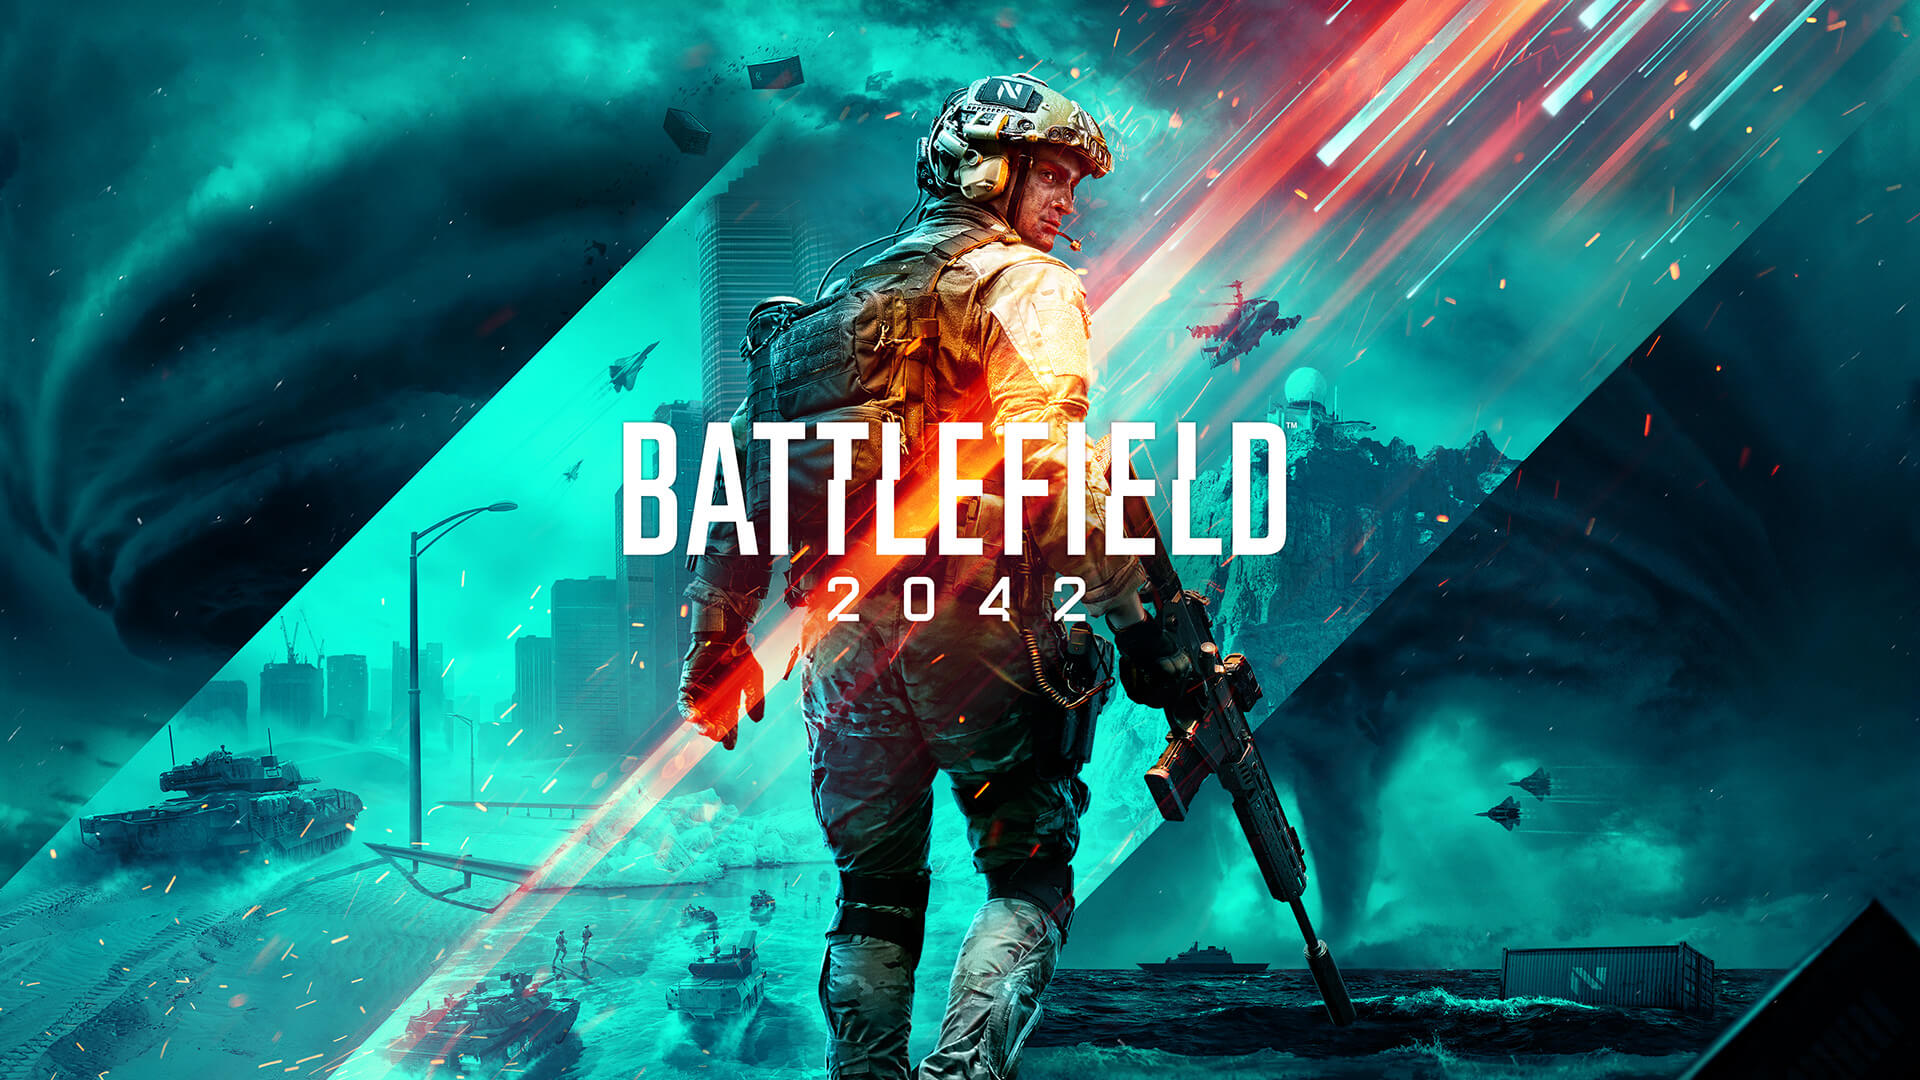 التجربة المجانية للعبة Battlefield 2042 تبدأ الأسبوع المقبل لمشتركي EA Play و Xbox Game Pass Ultimate